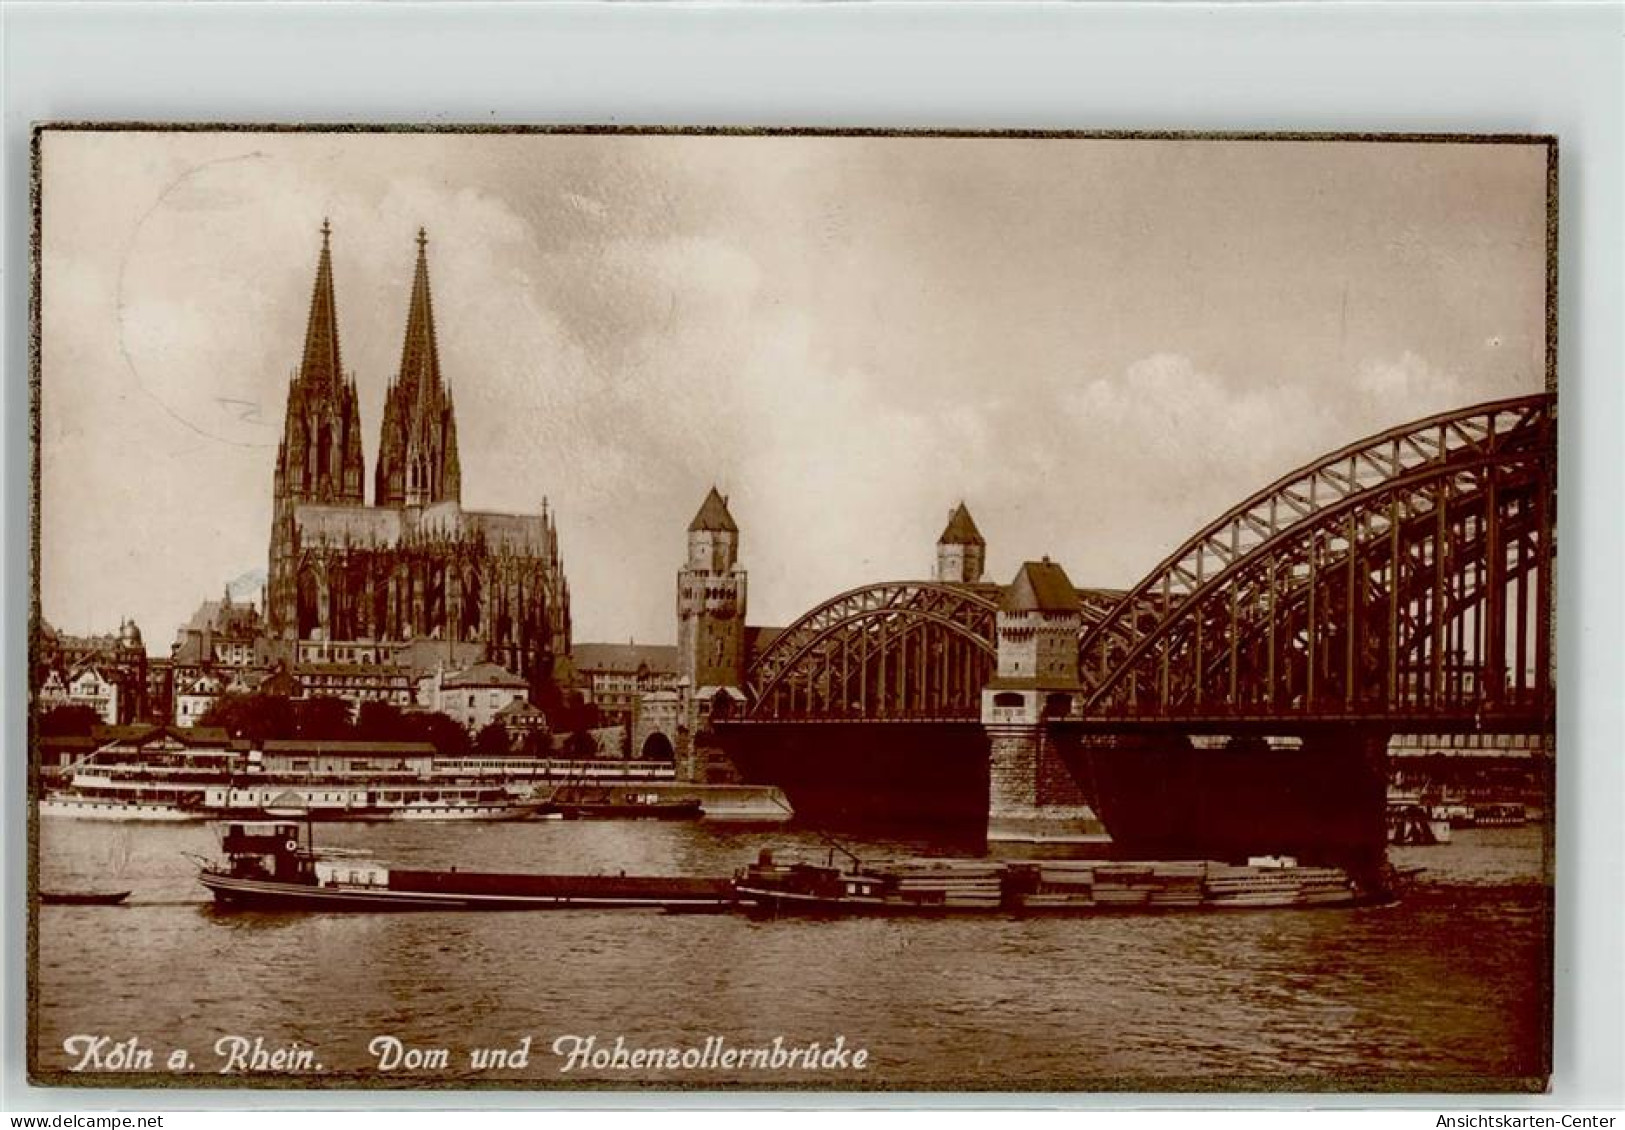 51857706 - - Köln